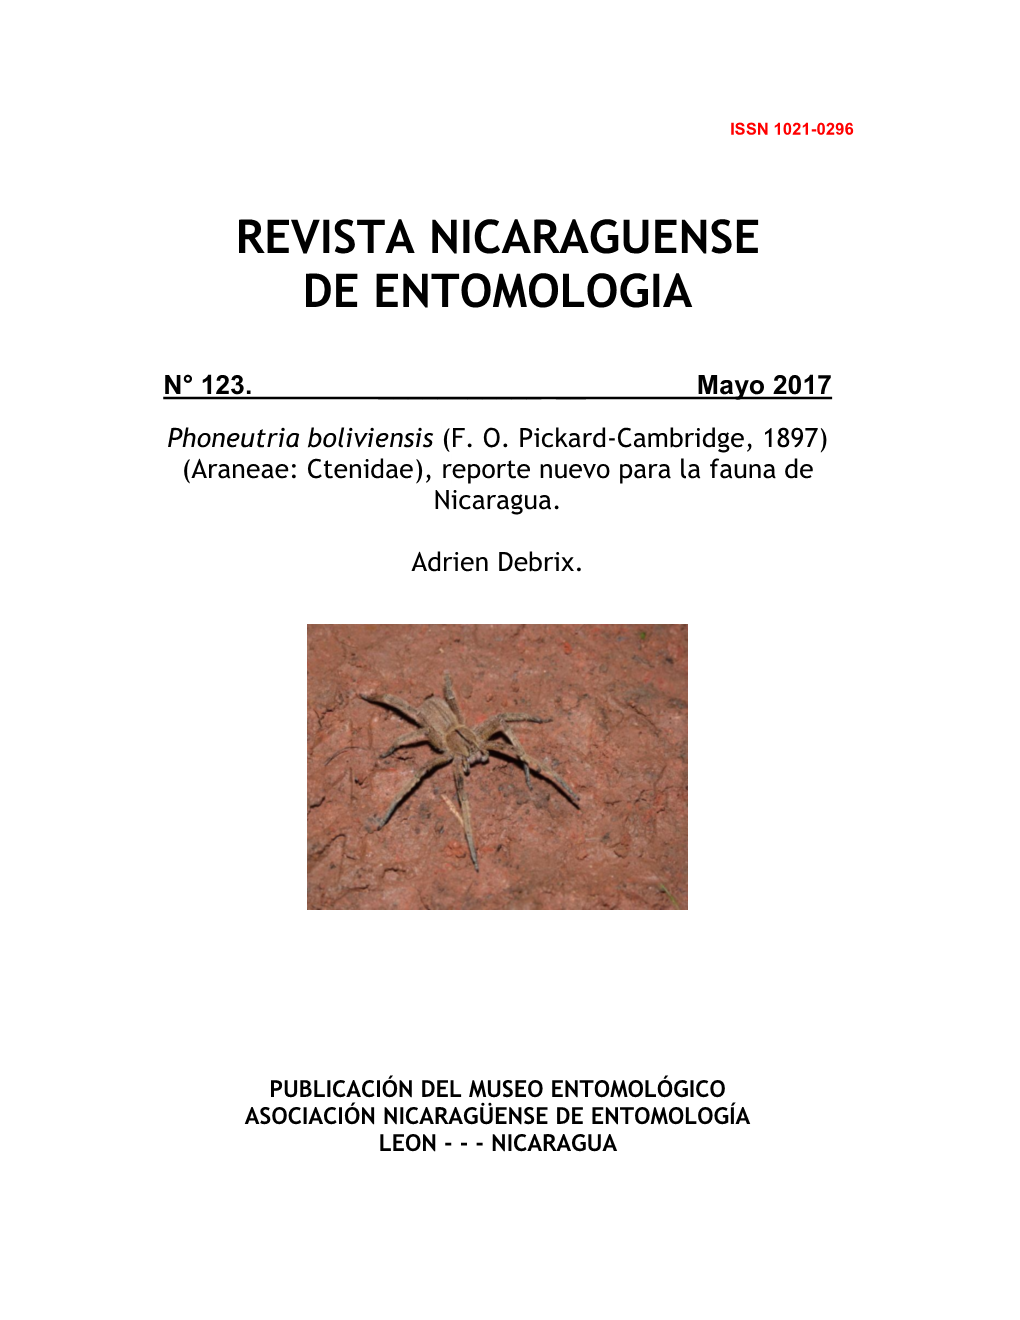 Phoneutria Boliviensis (F